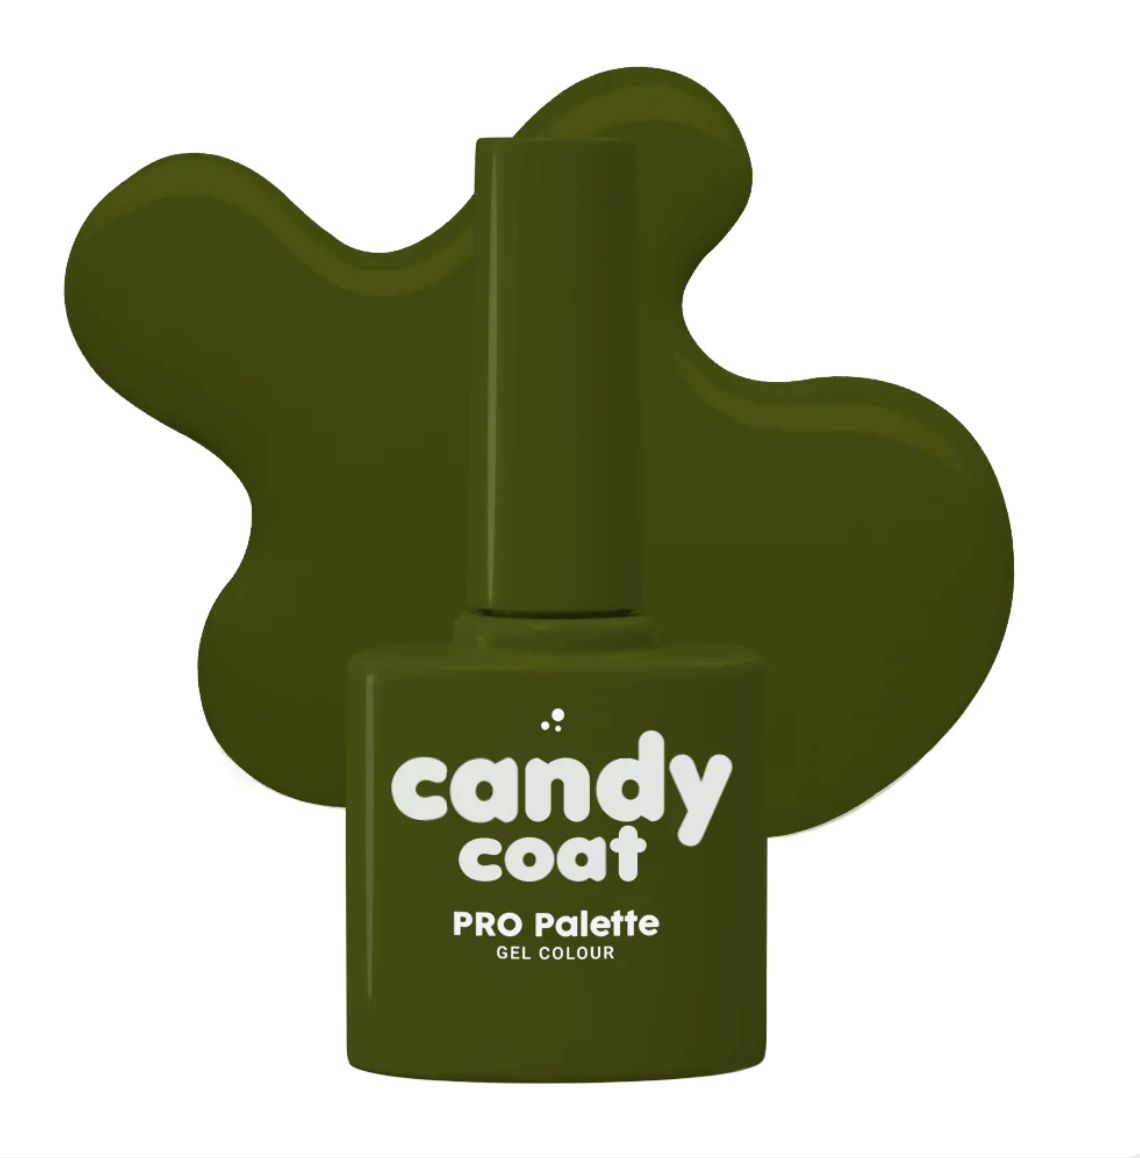 Candy Coat PRO Palette 753 Autumn